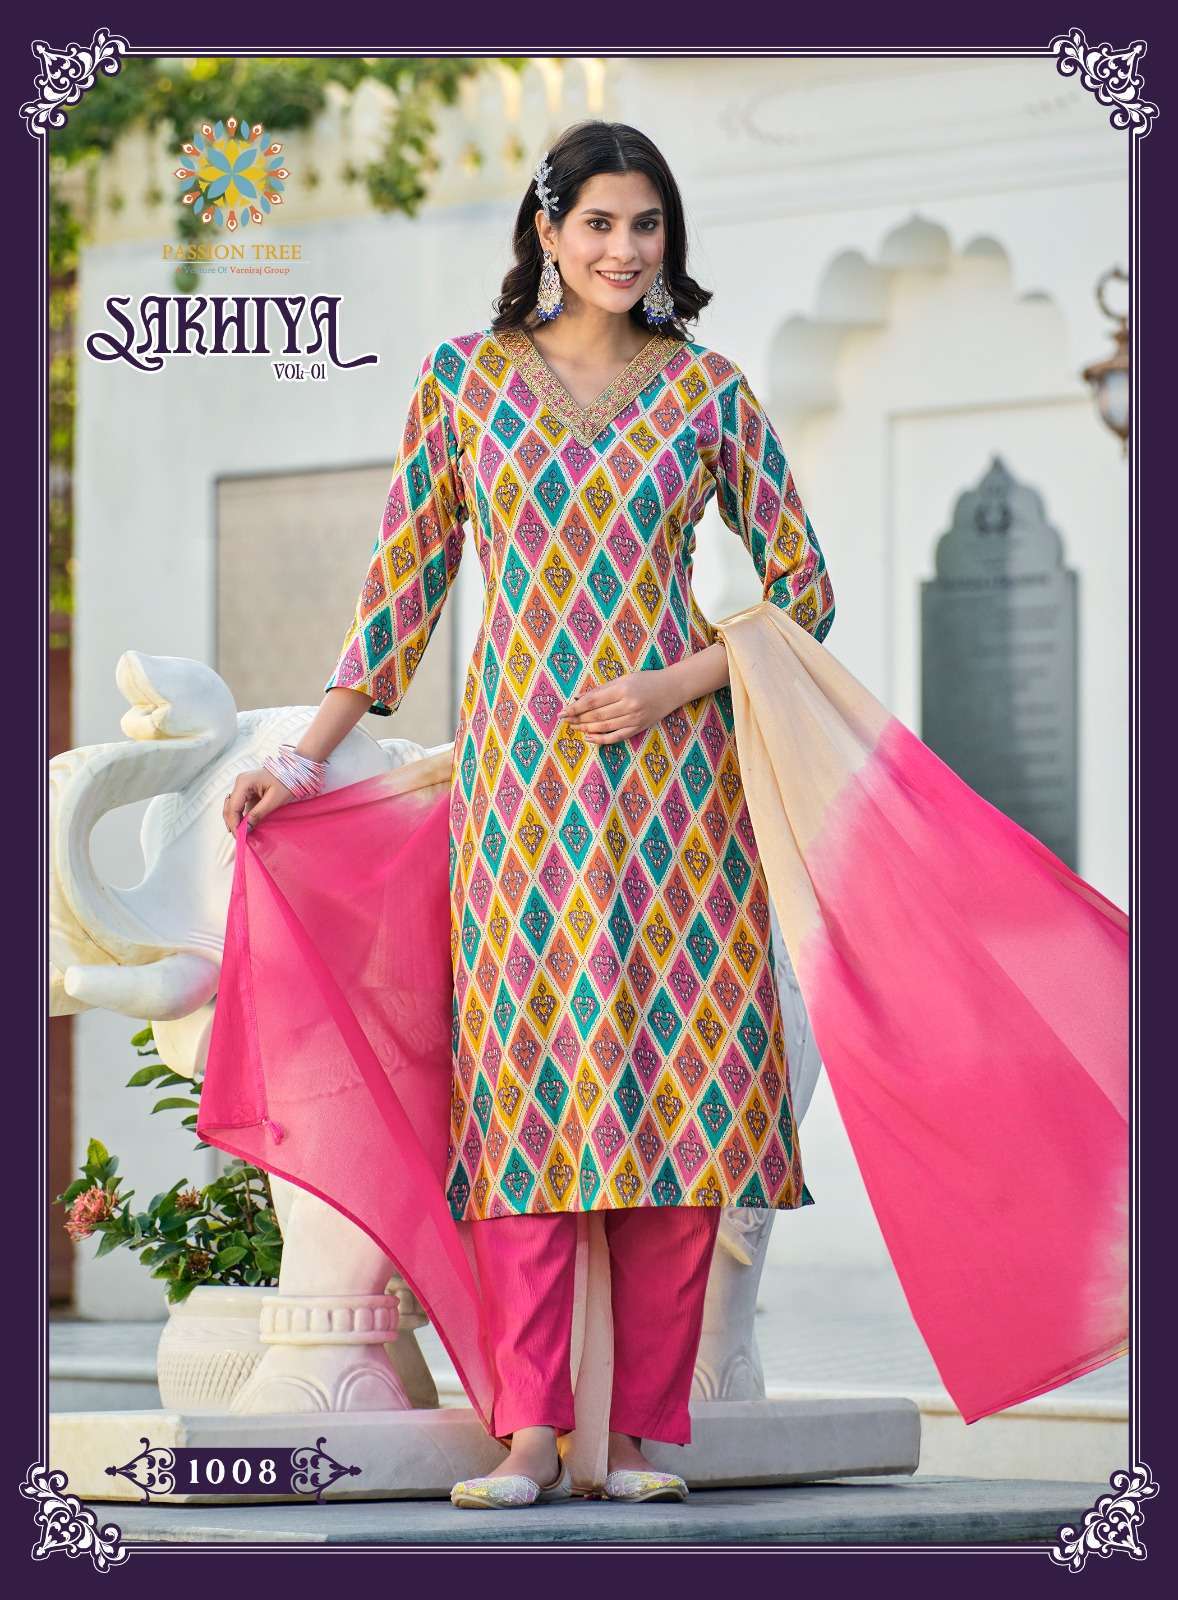 Passion Tree SAKHIYA VOL-1 Kurti Wholesale clothing distributors in India